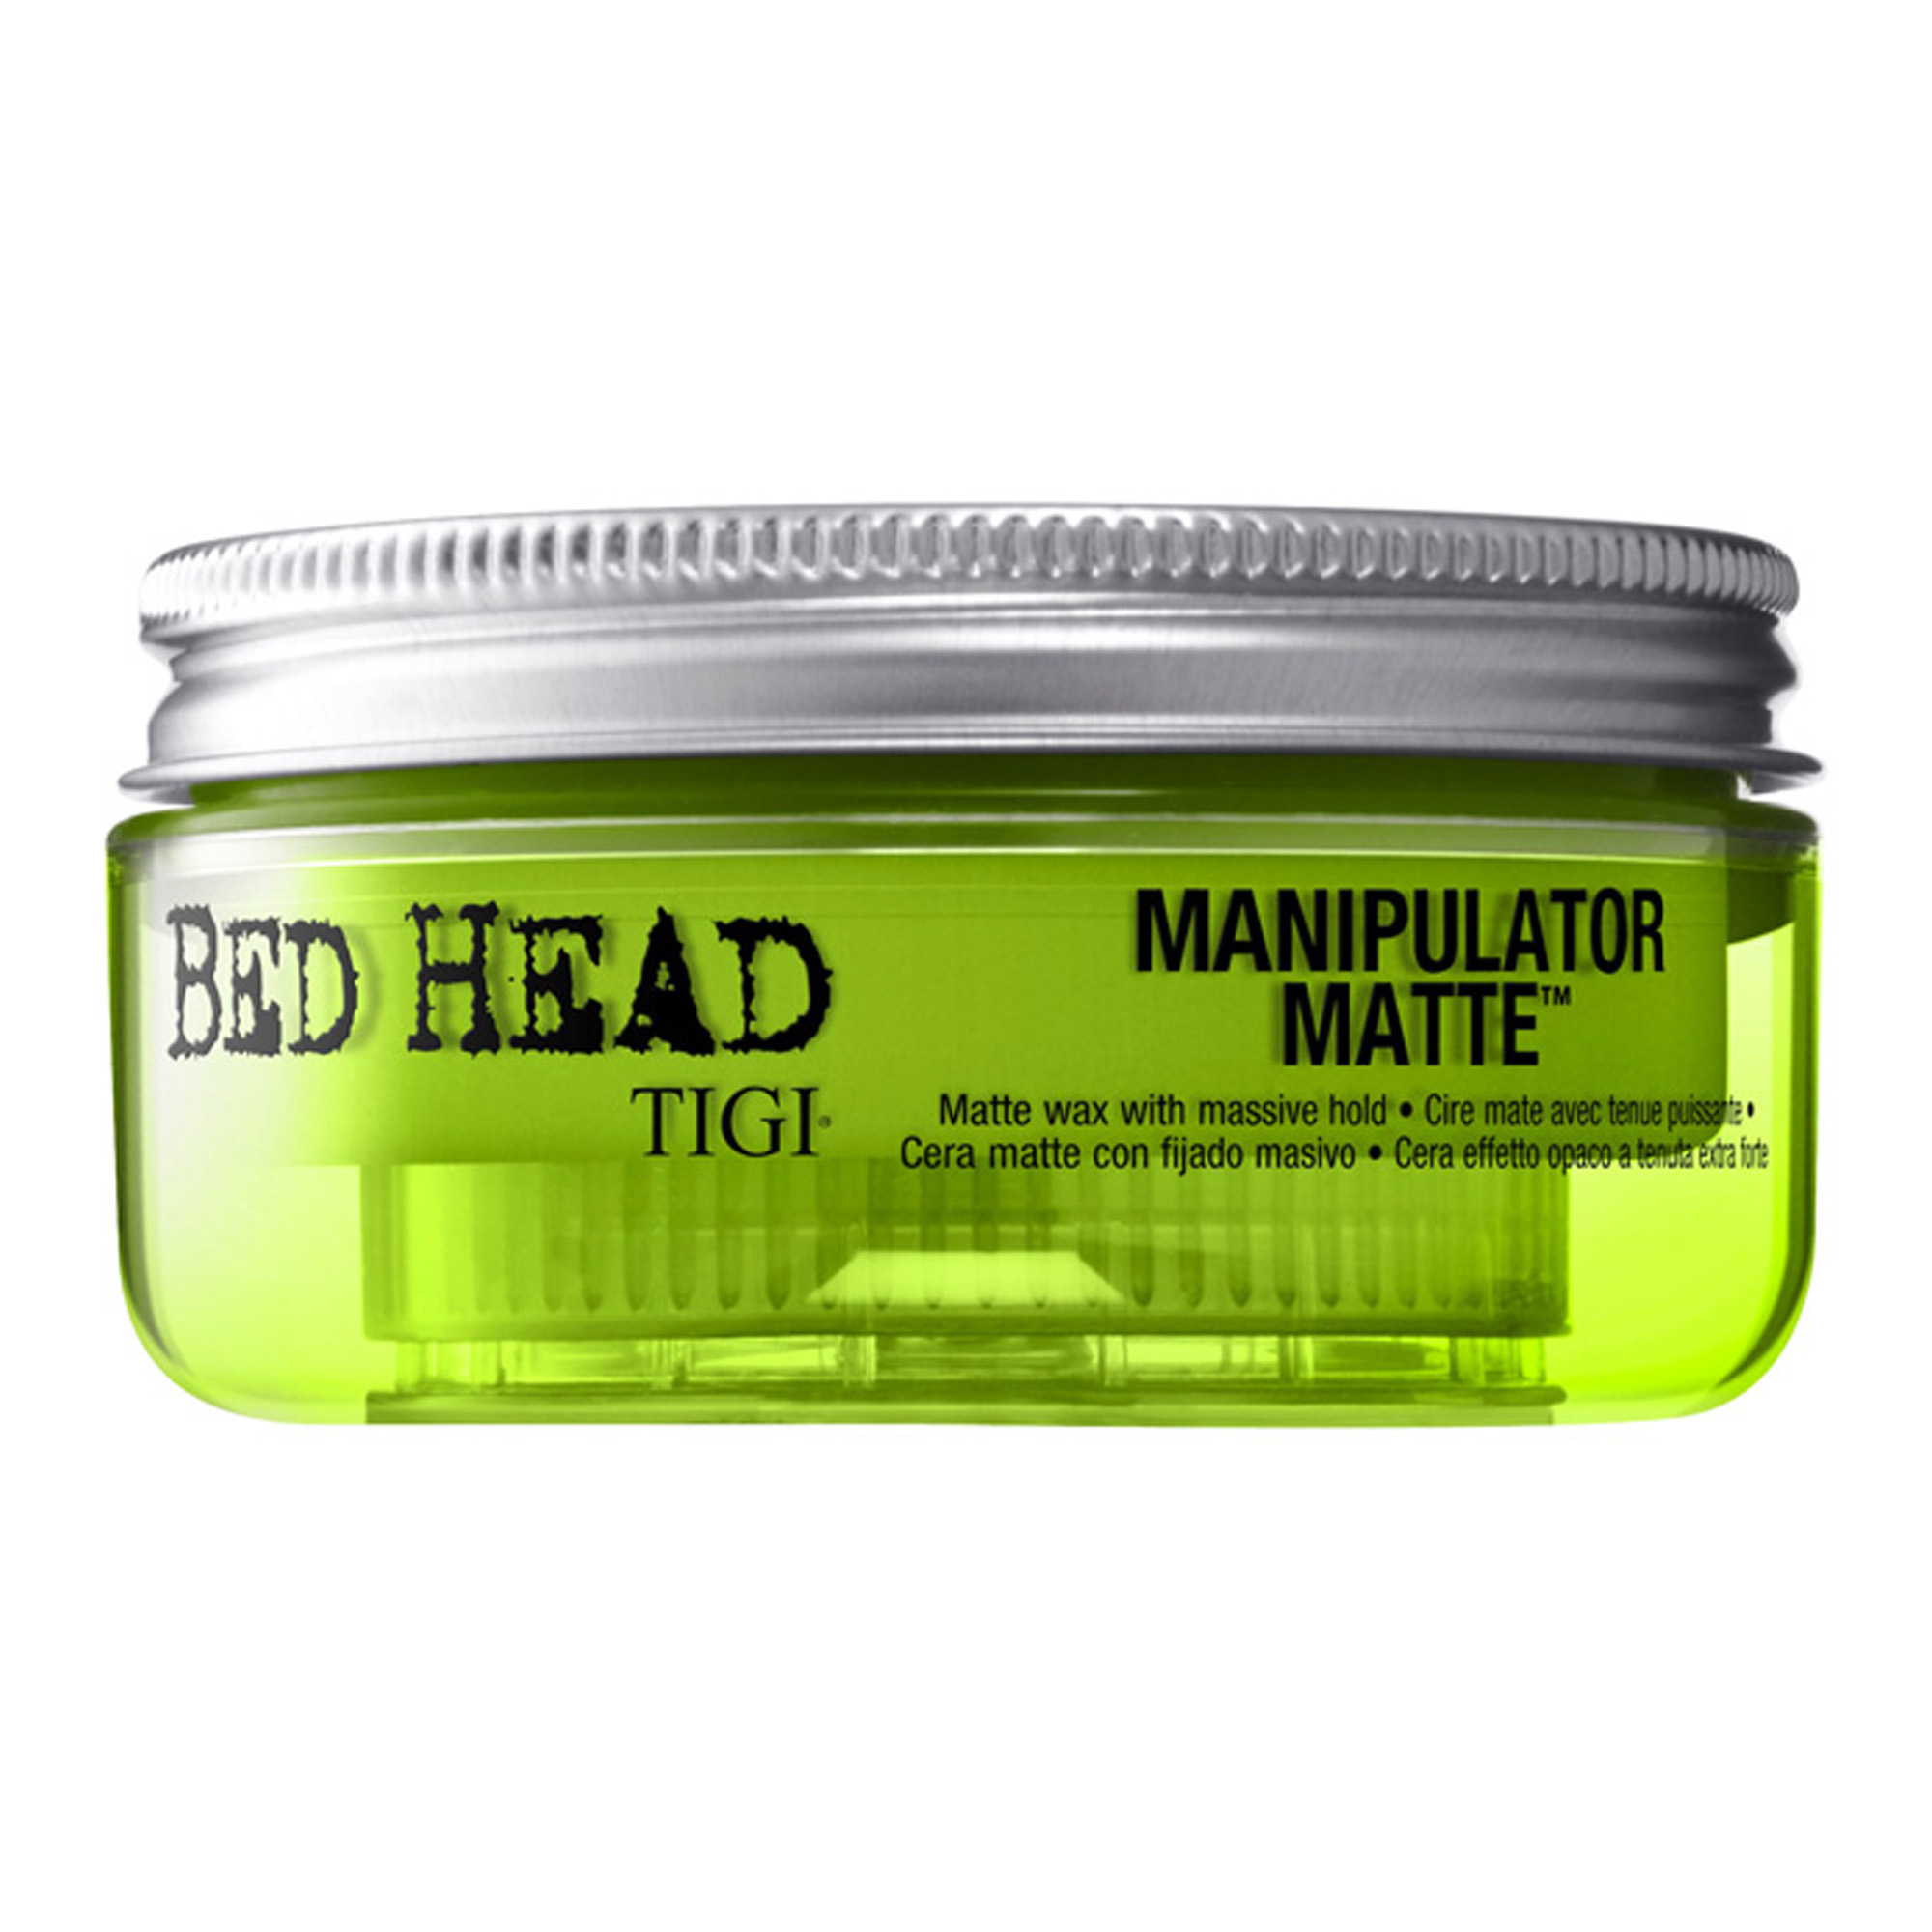 TIGI - Bed Head Manipulator Matte Wax